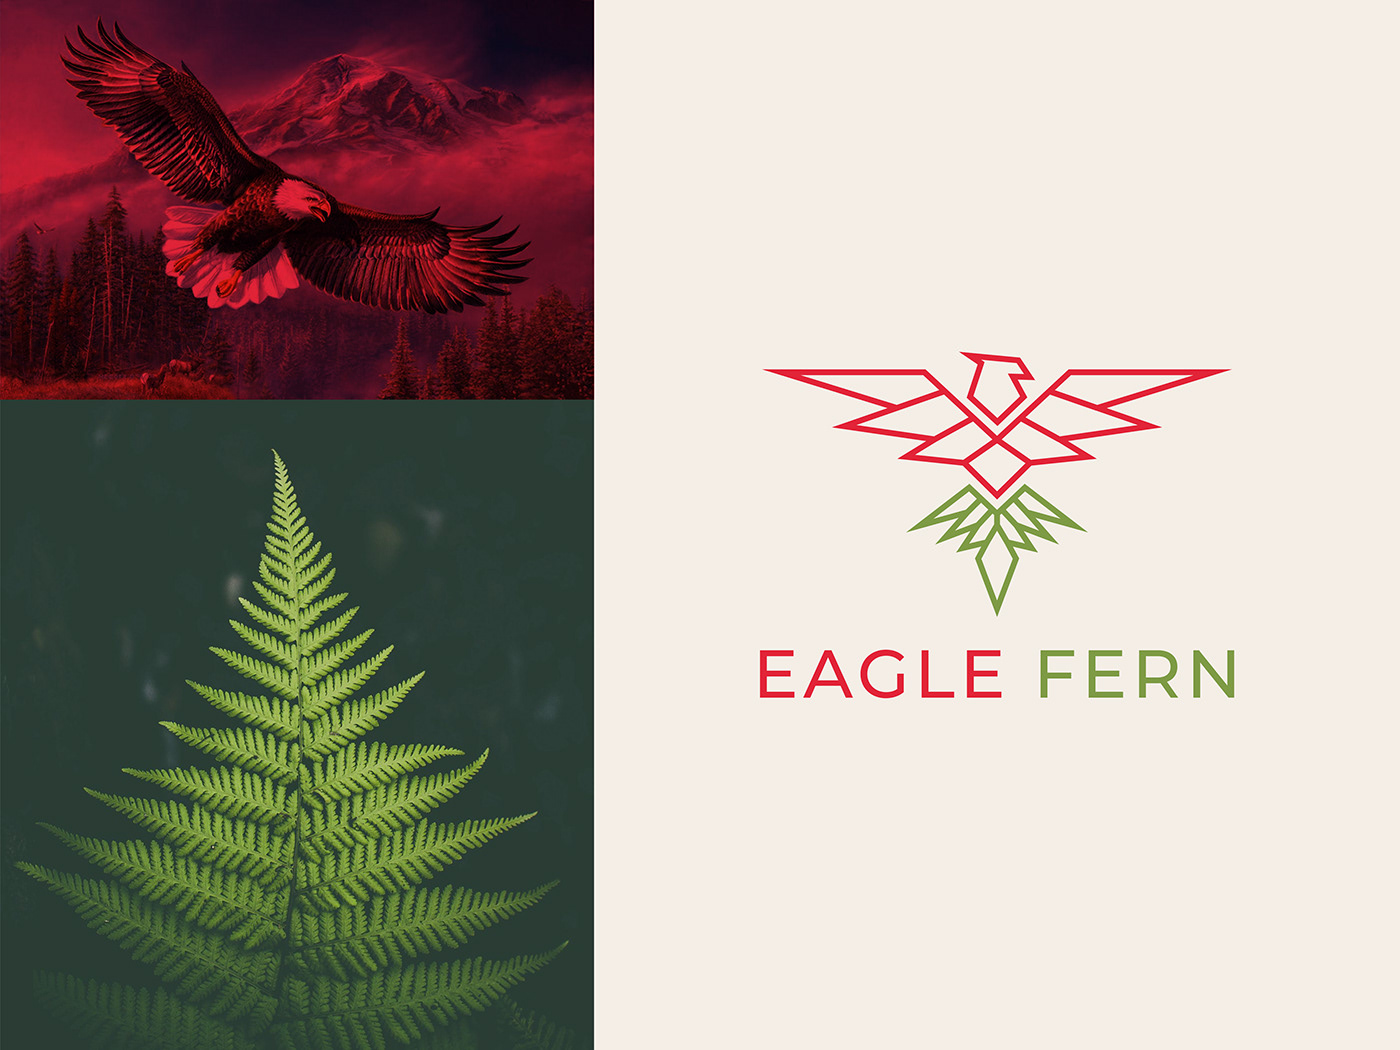 design eagle fern eagle logo fern logo flat logo minimal logo minimalist vector